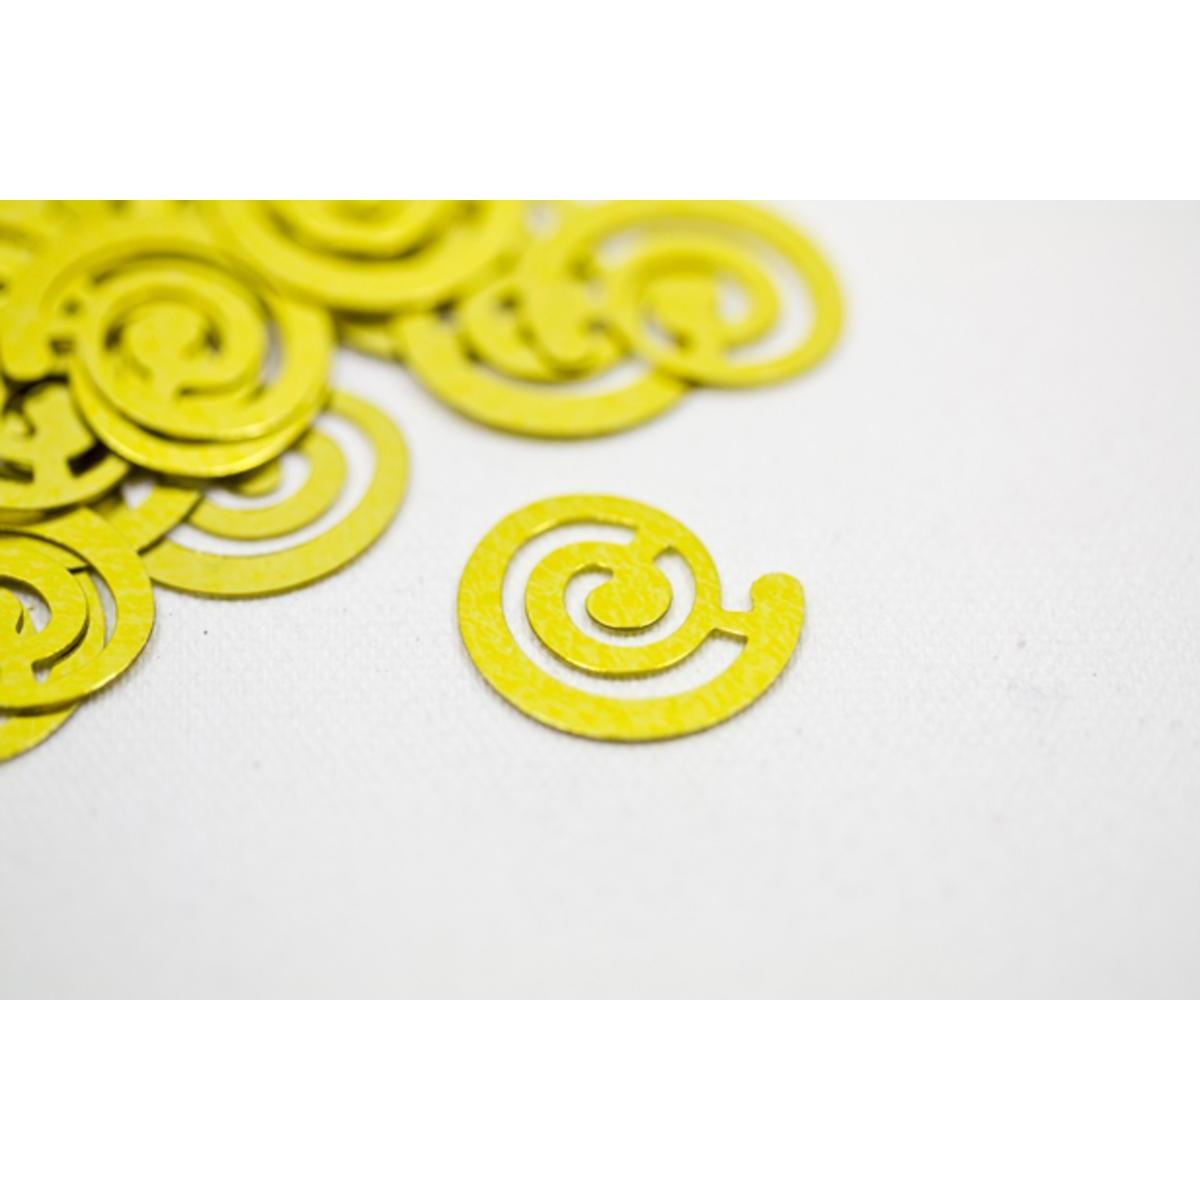 Confetti de table 'spiralé fantaisie ' (10 g) - 1.5 x 1.5 cm - Or